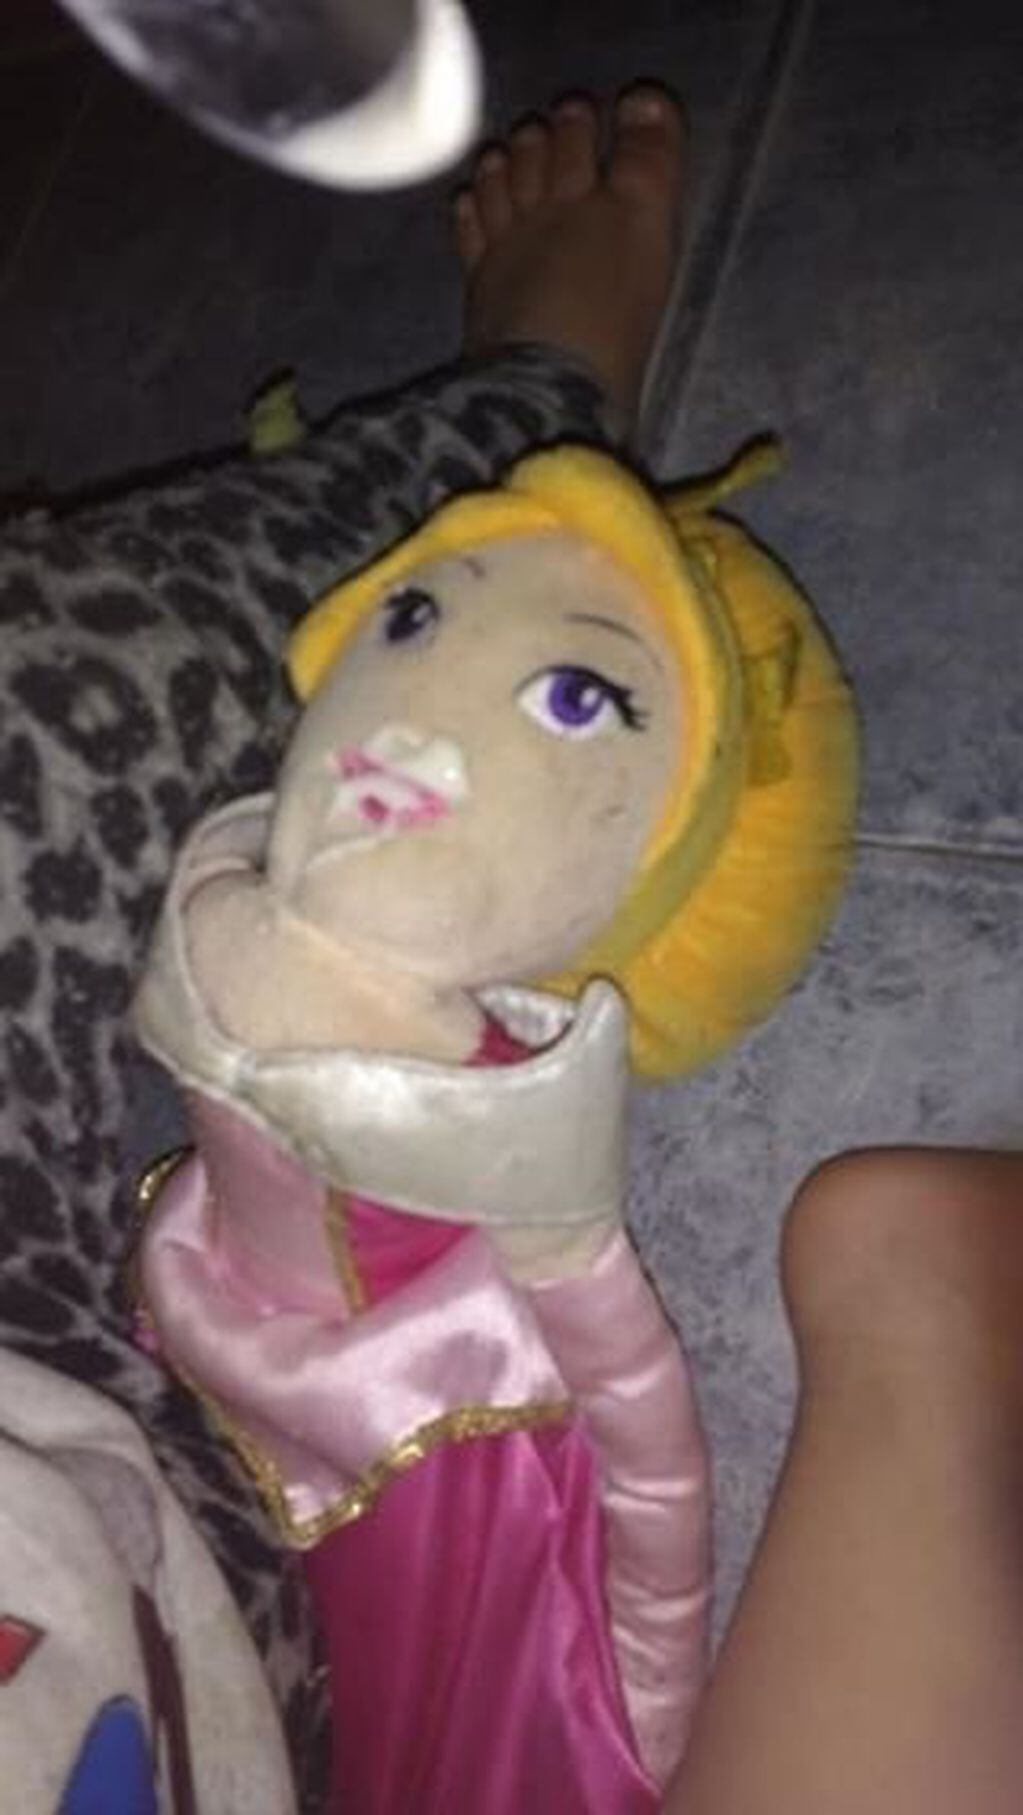 Una madre pidió por Facebook que la ayuden a encontrar la muñeca perdida de su hija.